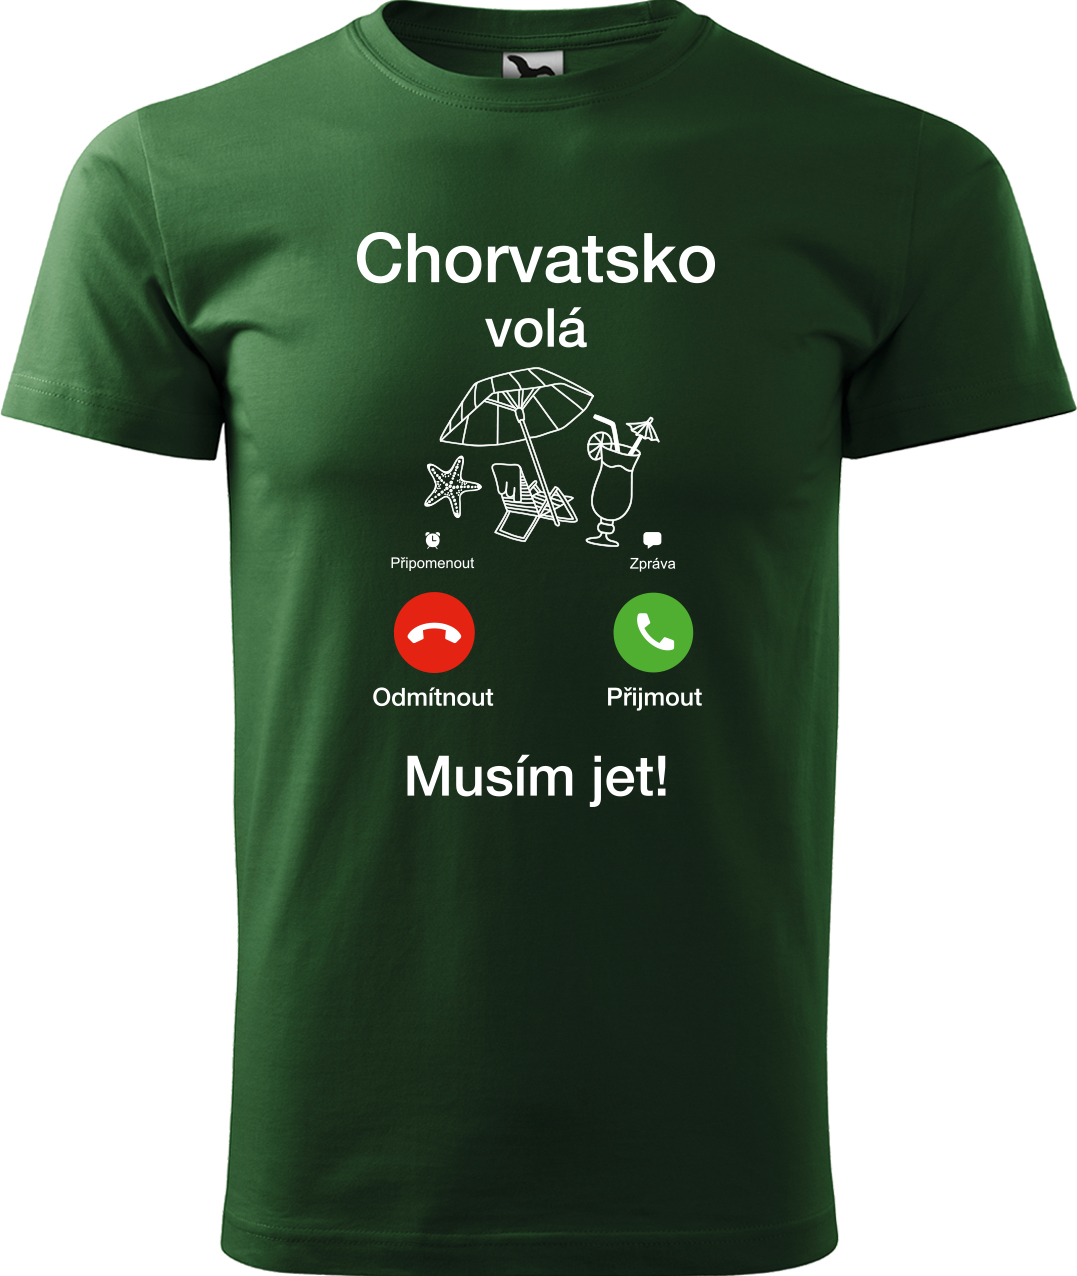 Pánské cestovatelské tričko - Chorvatsko volá - musím jet! Velikost: S, Barva: Lahvově zelená (06), Střih: pánský